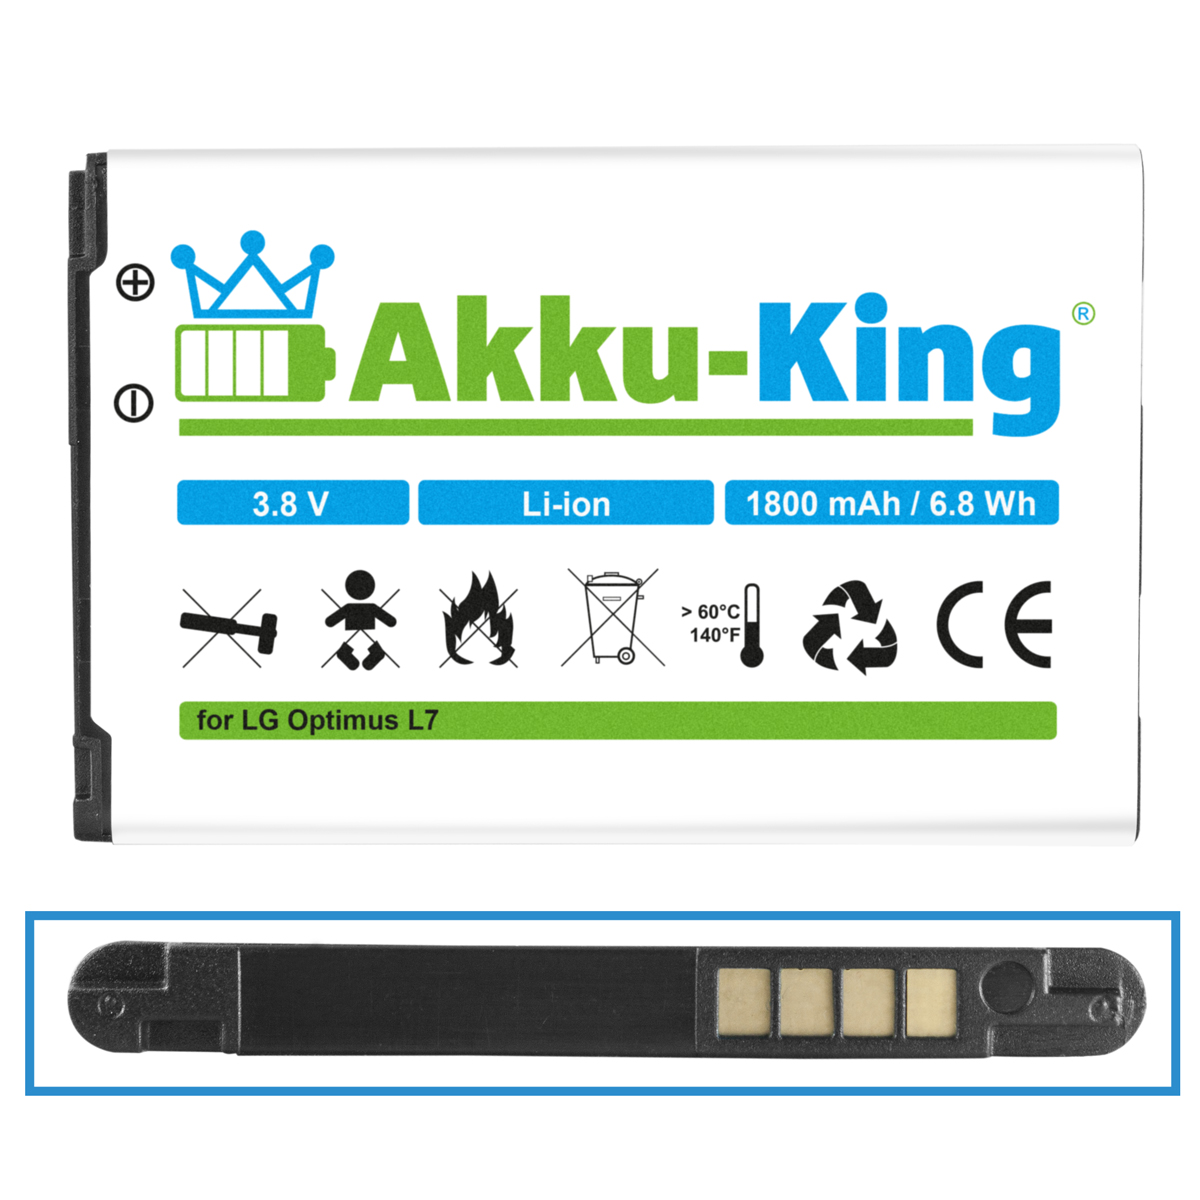 AKKU-KING Akku mit kompatibel Li-Ion 1800mAh Volt, Handy-Akku, LG 3.8 BL-44JH